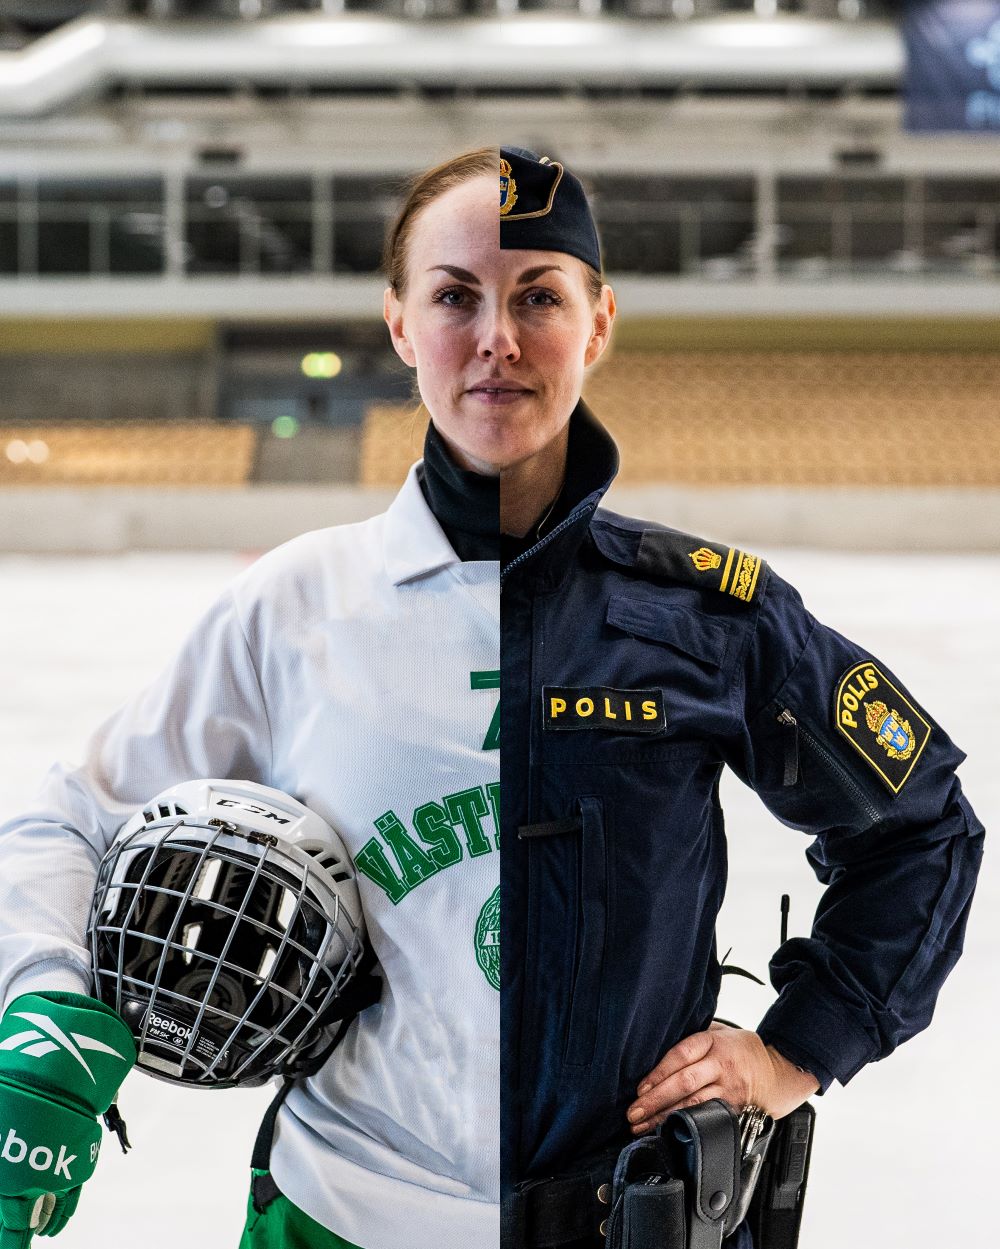 Malin kombinerade polisutbildningen med idrottssatsning. Idag arbetar hon som yttre befäl i polisområde Västmanland.